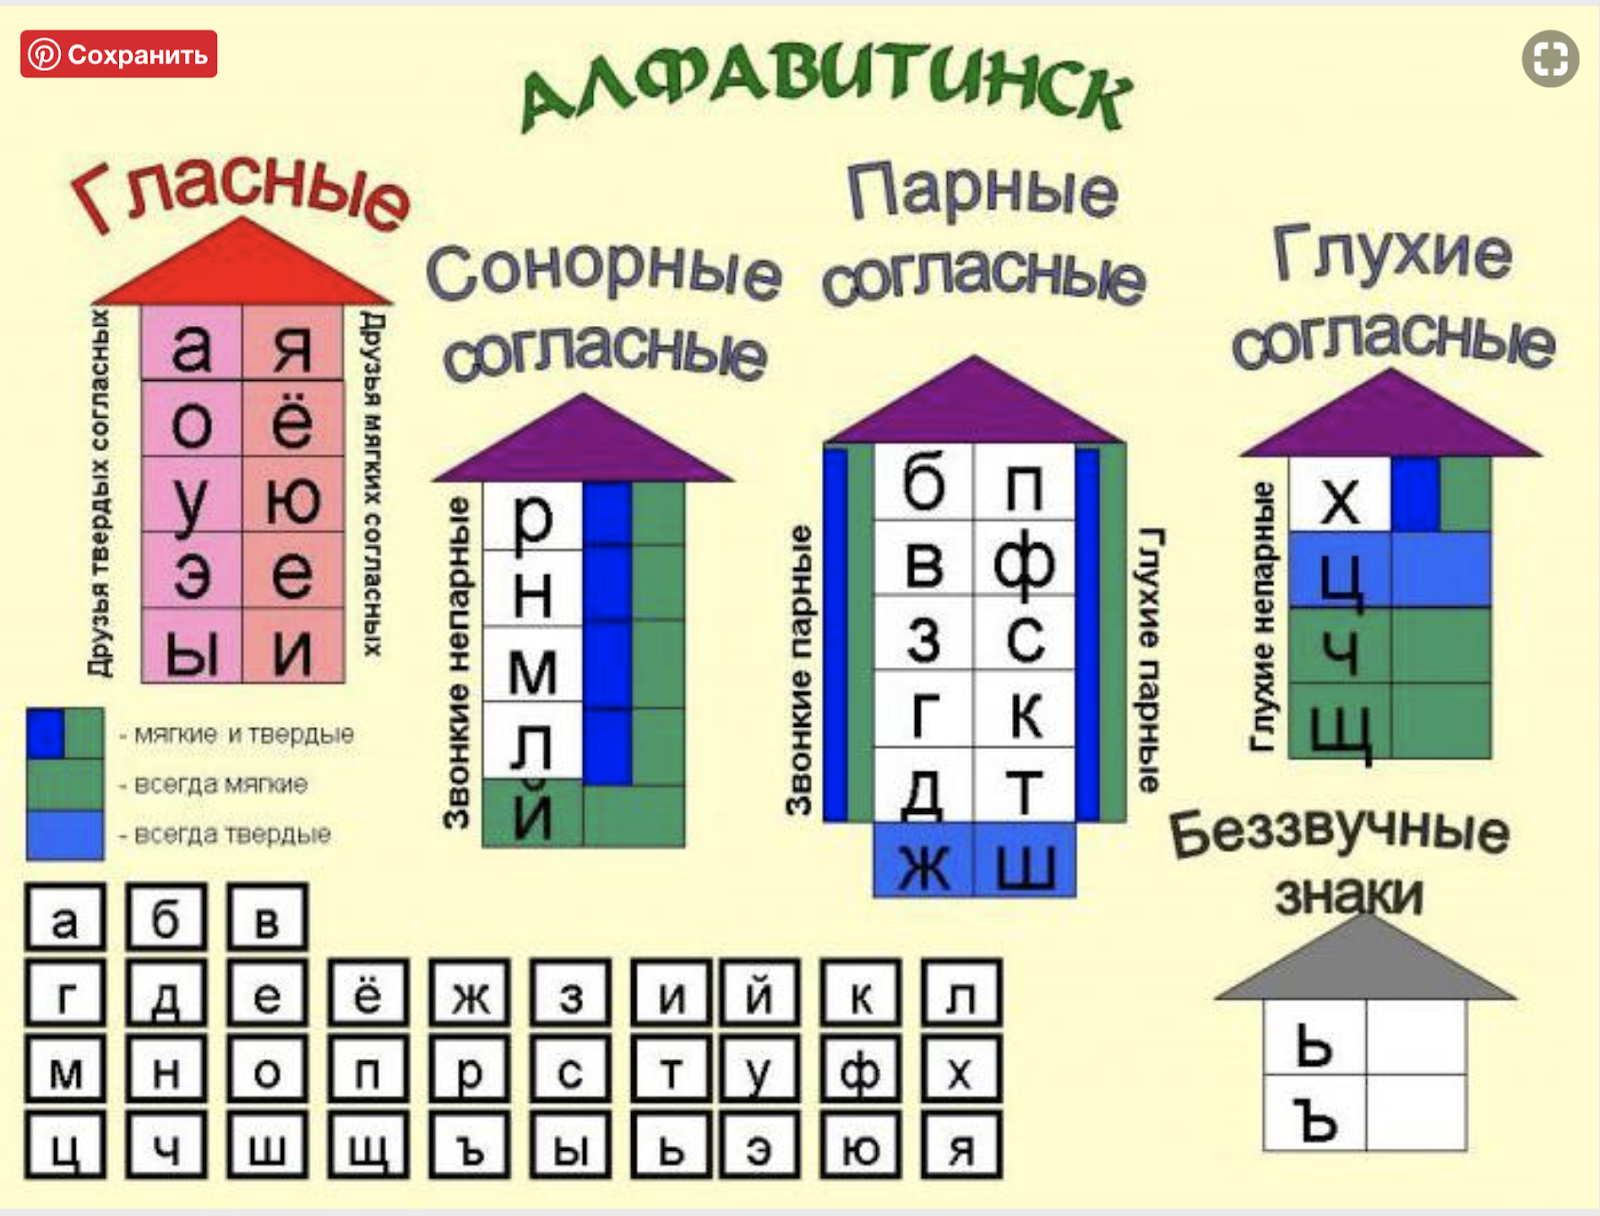 Схема согласных и гласных звуков русского языка